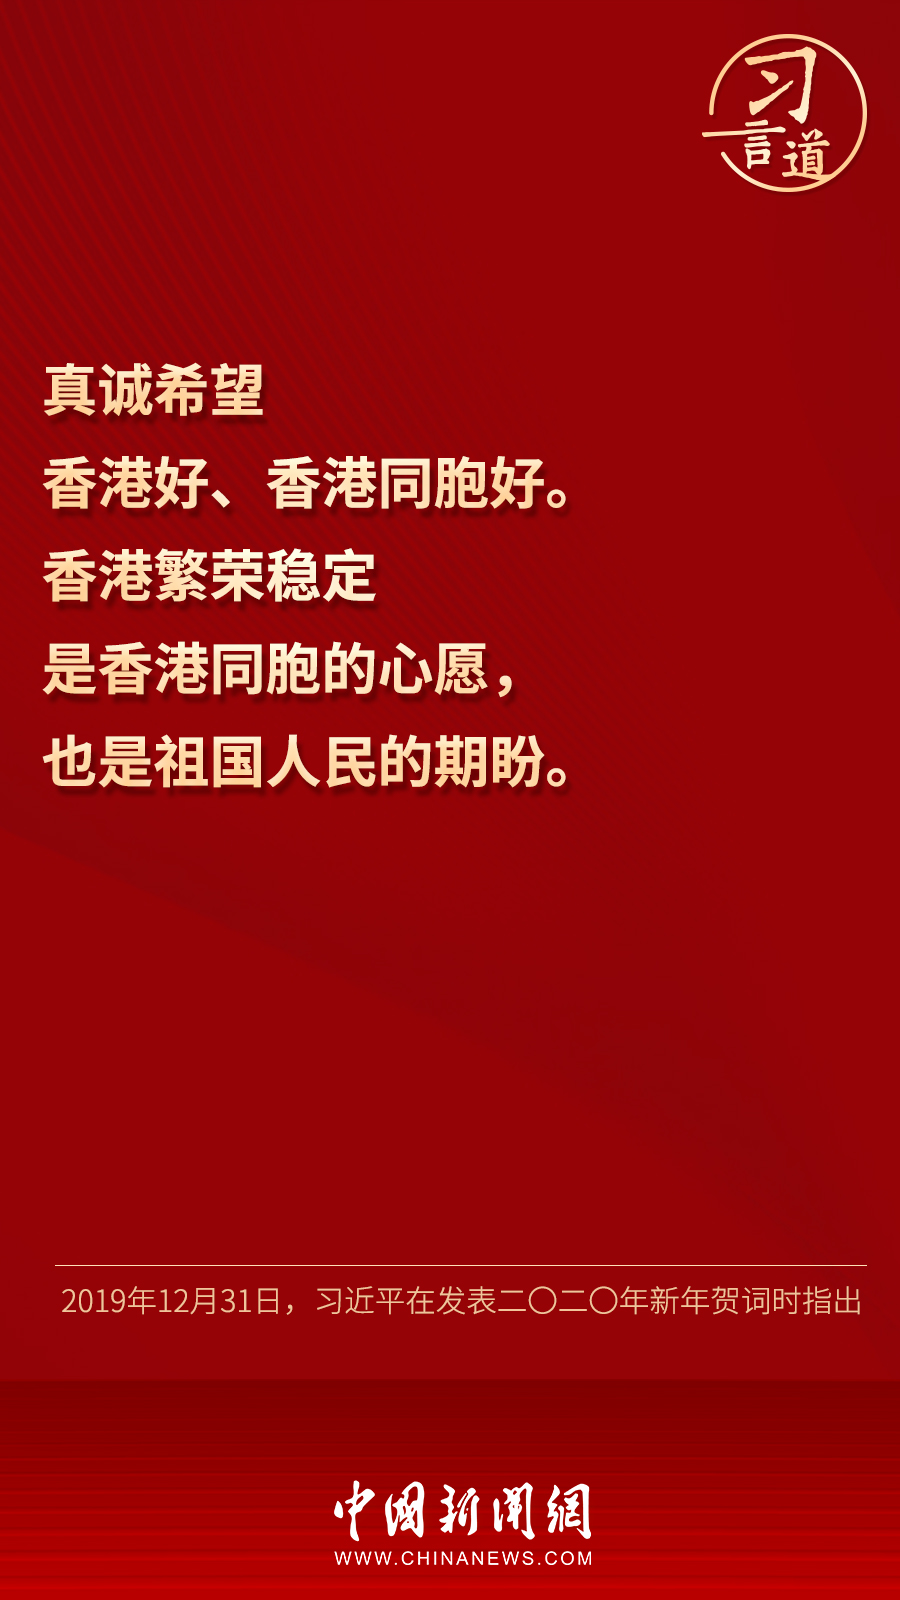 【明珠耀香江】习言道丨“真诚希望香港好、香港同胞好”